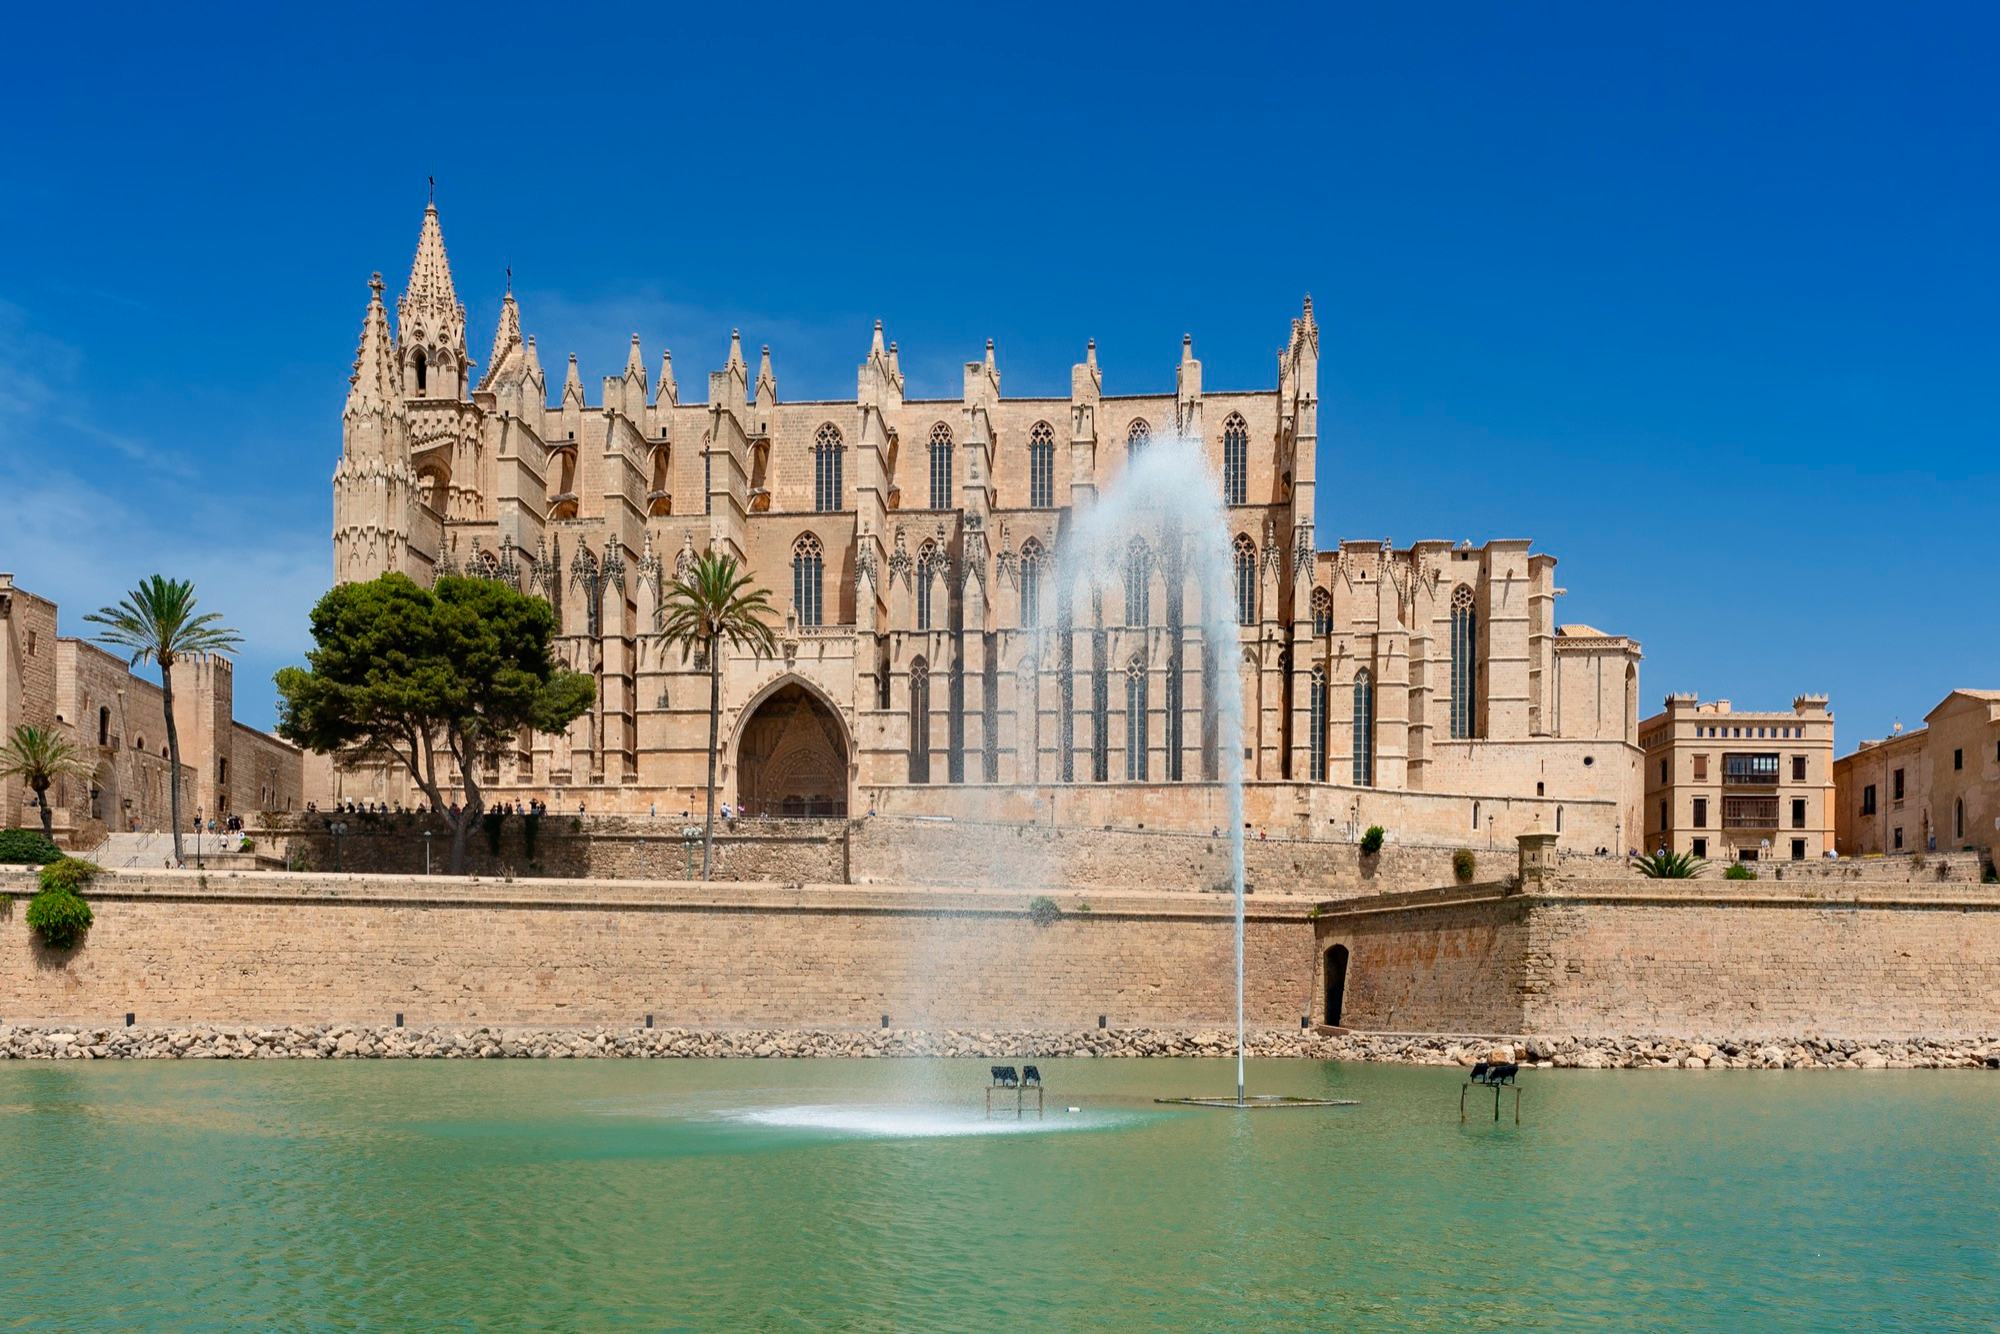 La Seu - bestaunen Sie die beeindruckende Kathedrale wÃfffffffffffÃfffffffff,Ãffffffff,Ãfffffff,Ãffffff,Ãfffff,Ãffff,Ãfff,Ãff,Ãf,Ã,Â¤hrend Ihrer Mallorca-Pauschalreise.